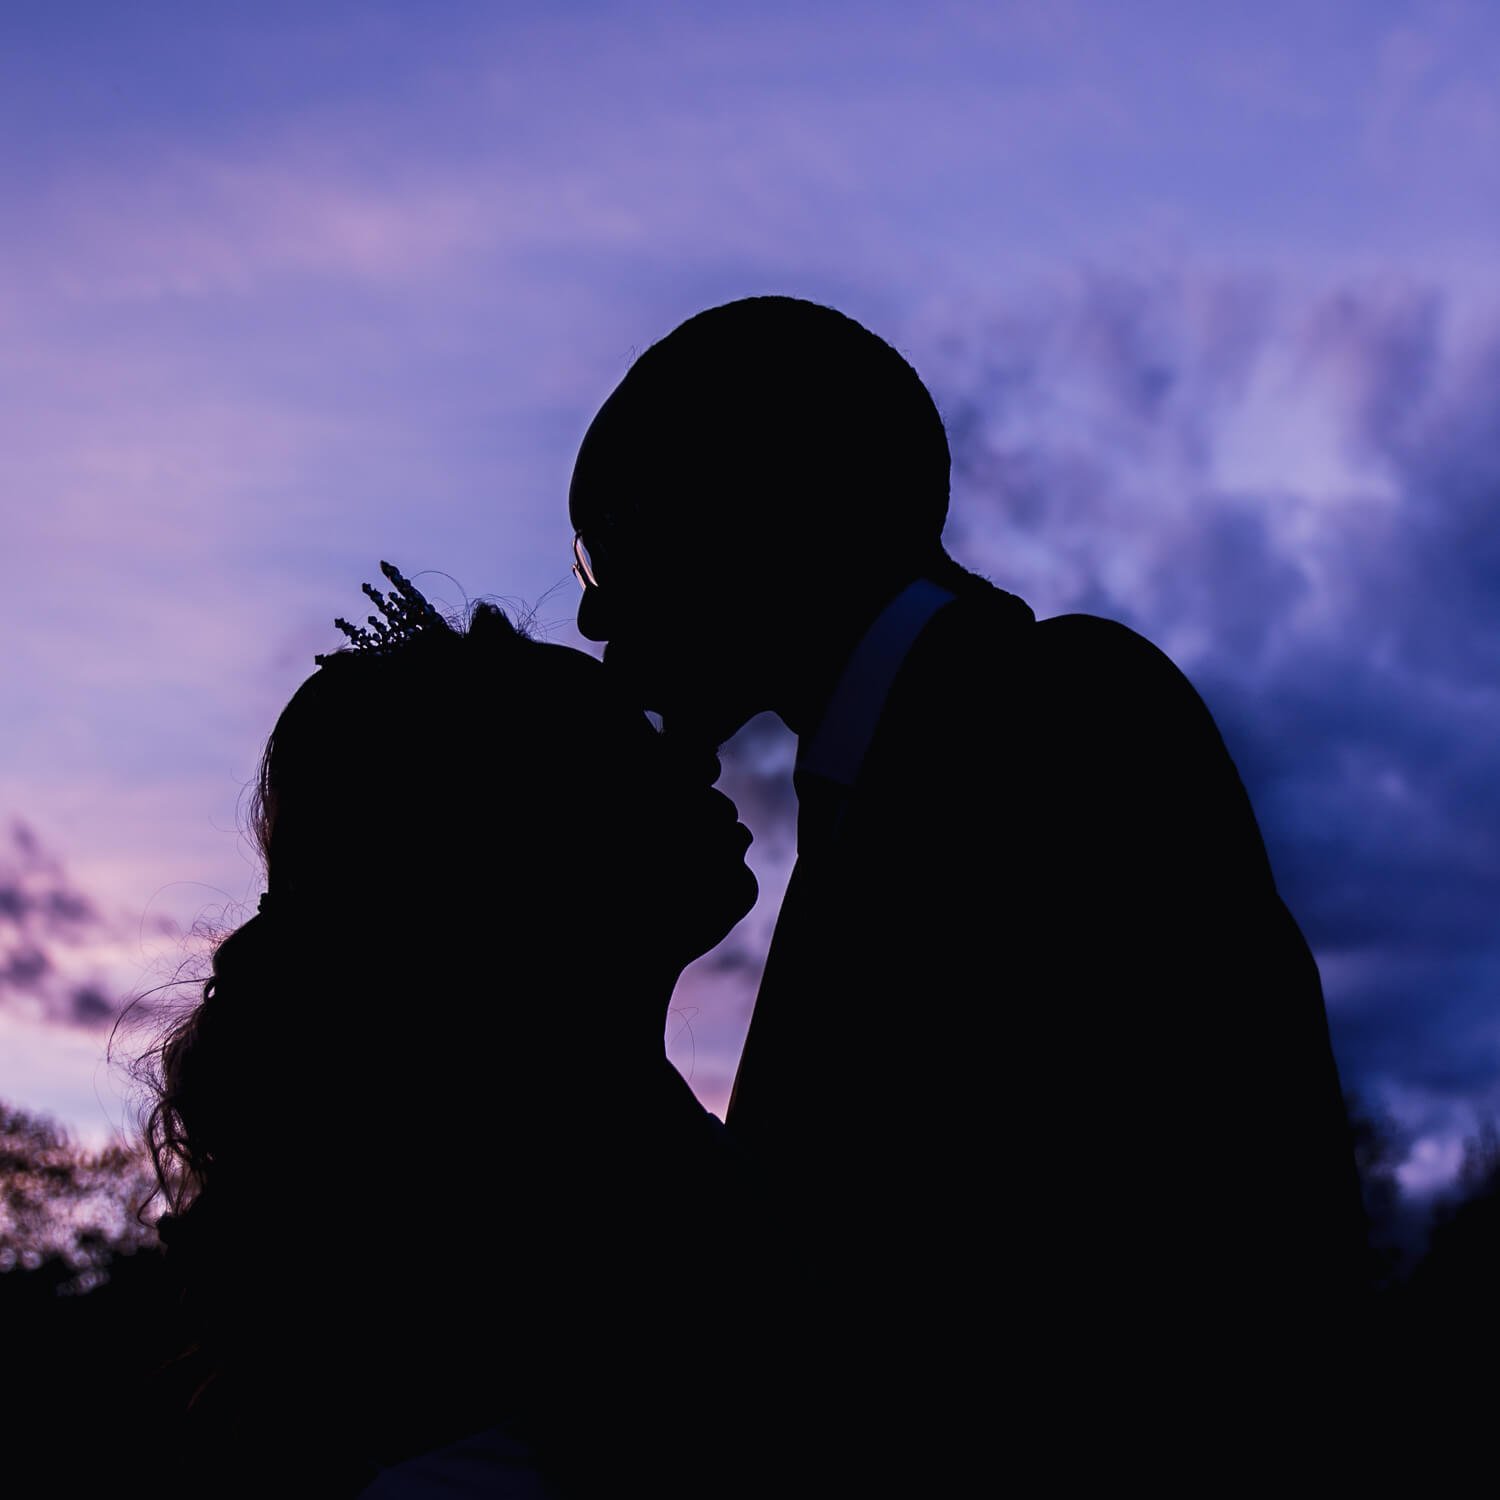 colorado-springs-wedding-photographer-silhouette-photo.jpg